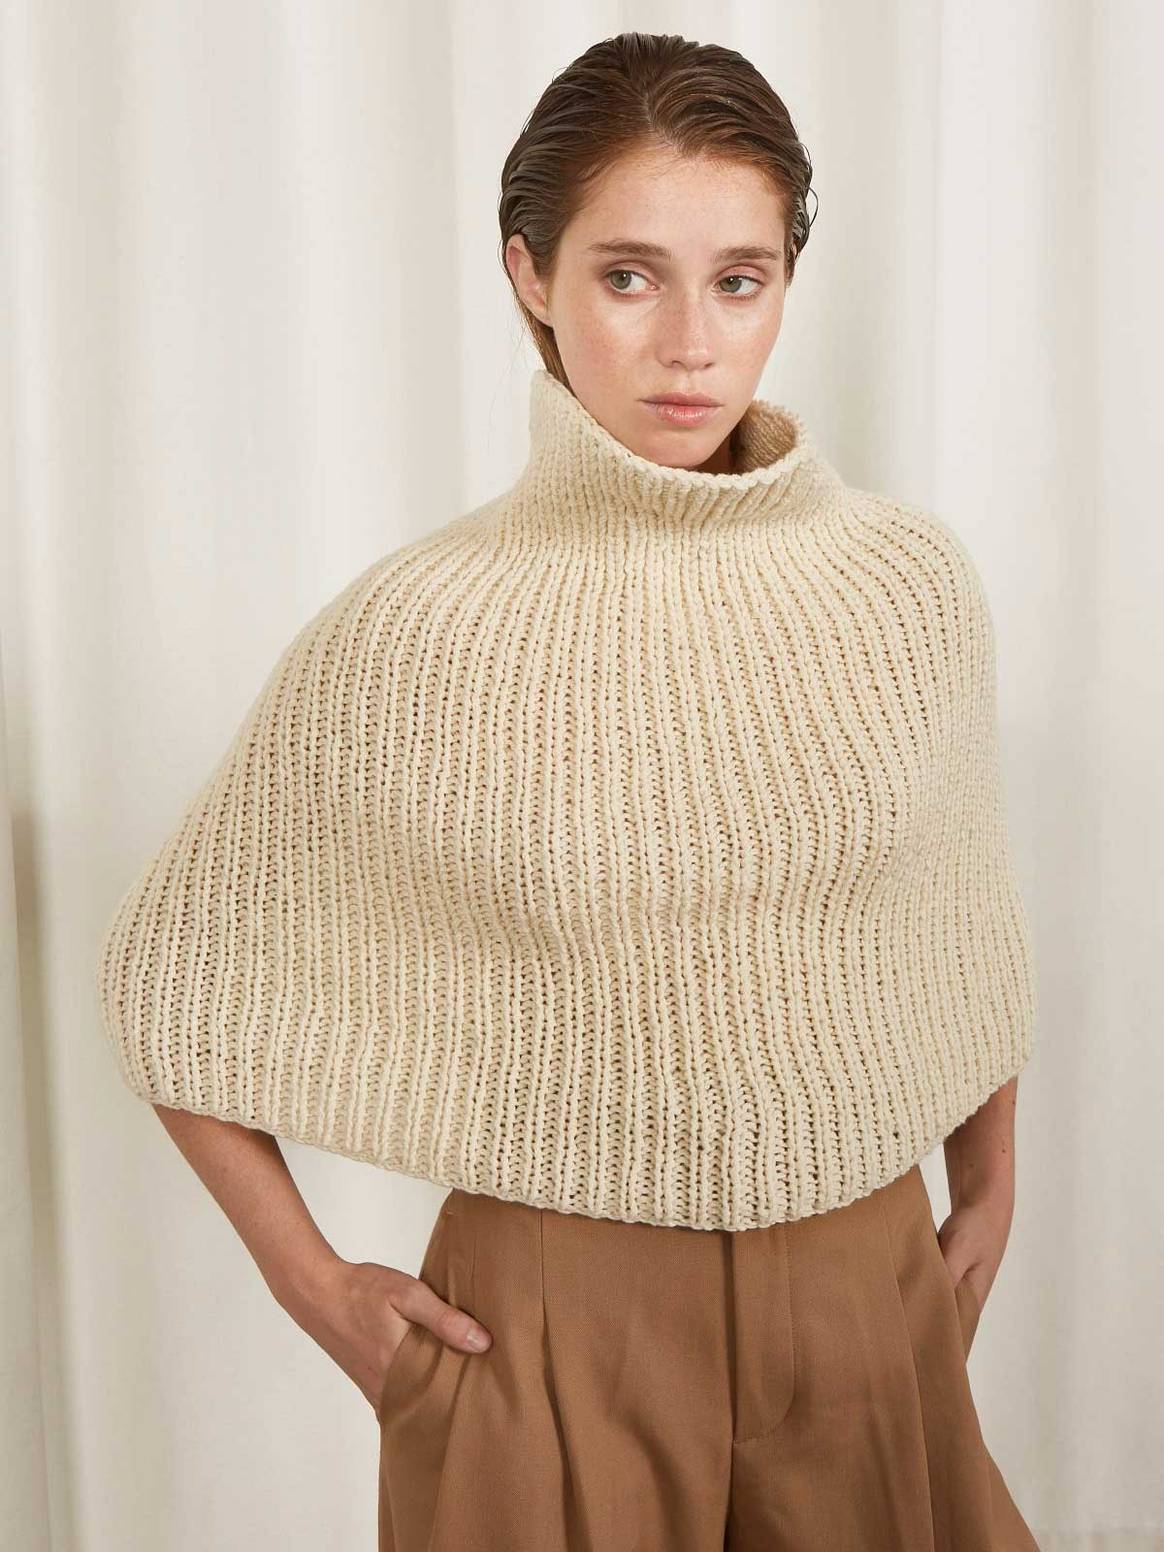 Conoce Maydi, la marca artesanal de tejidos con fibras argentinas